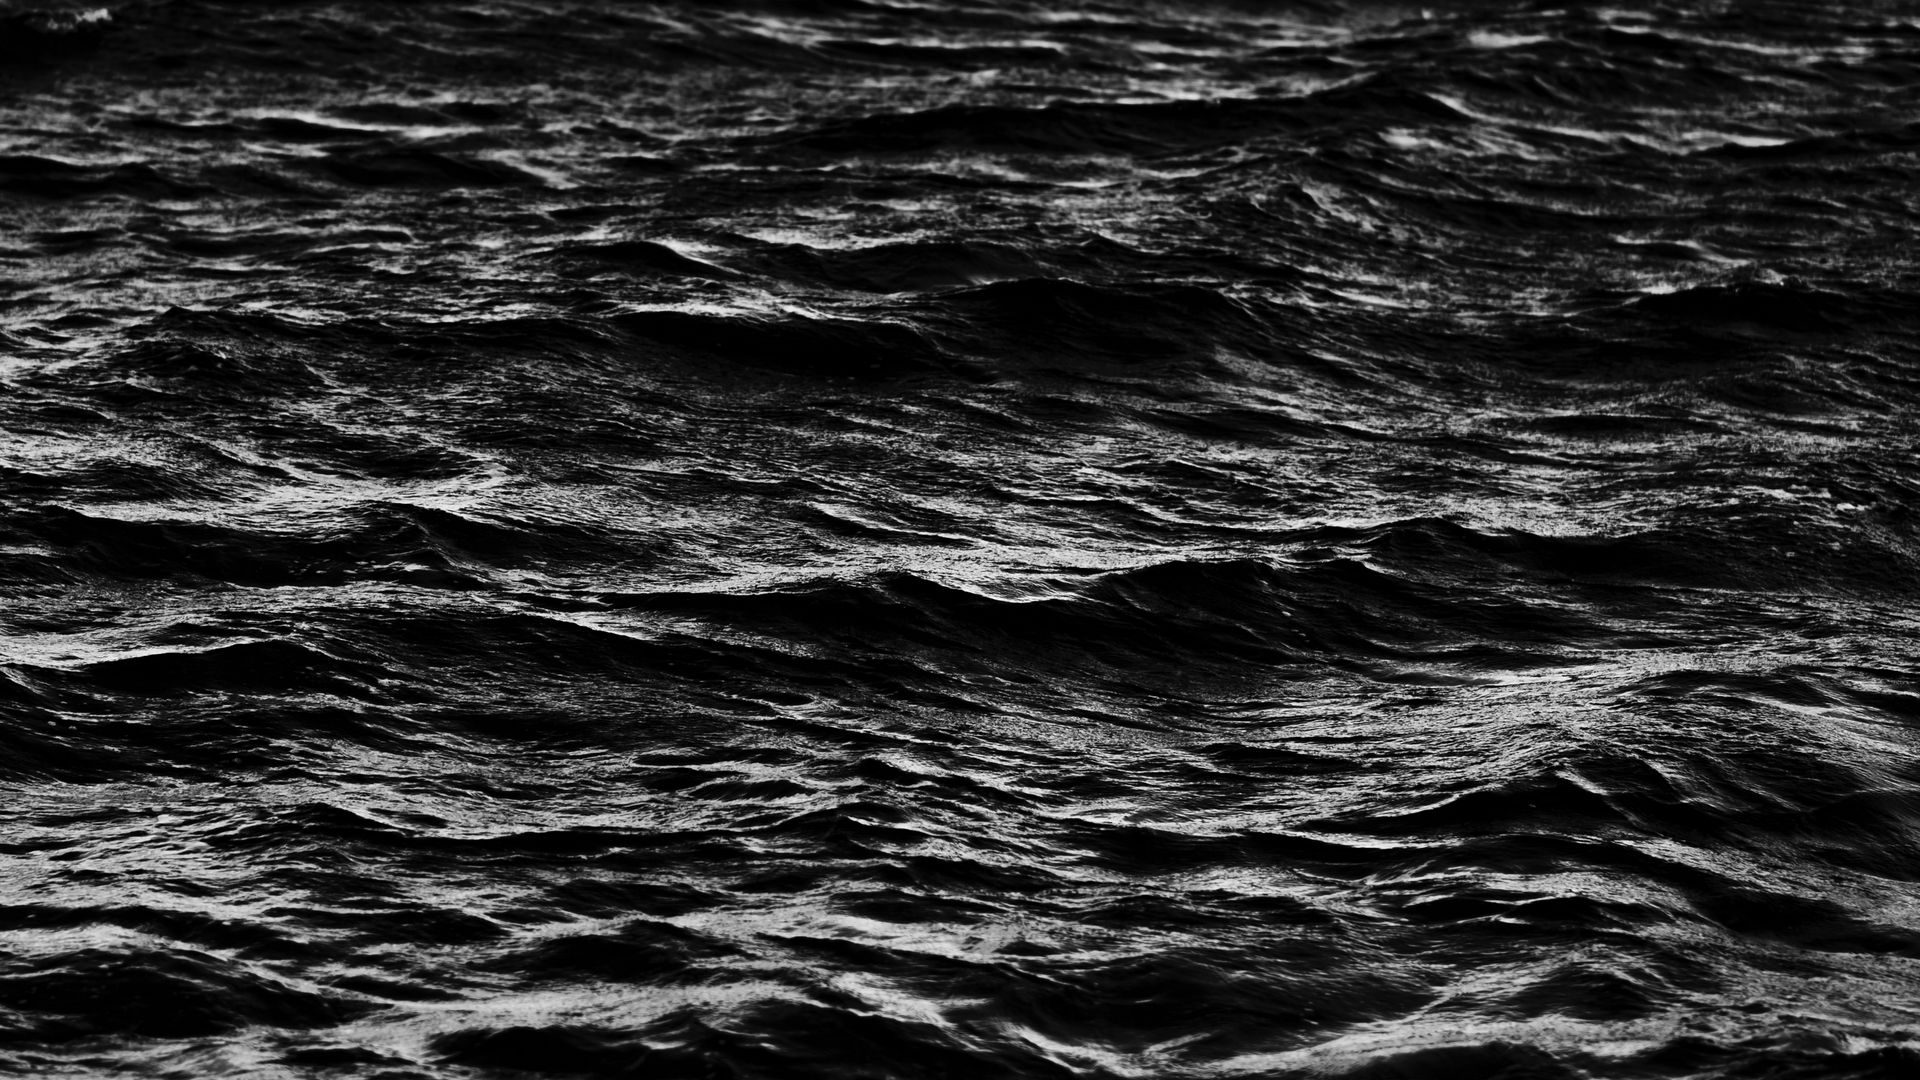 Скачать 1920x1080 волны, вода, черный обои, картинки full hd, hdtv, fhd,  1080p